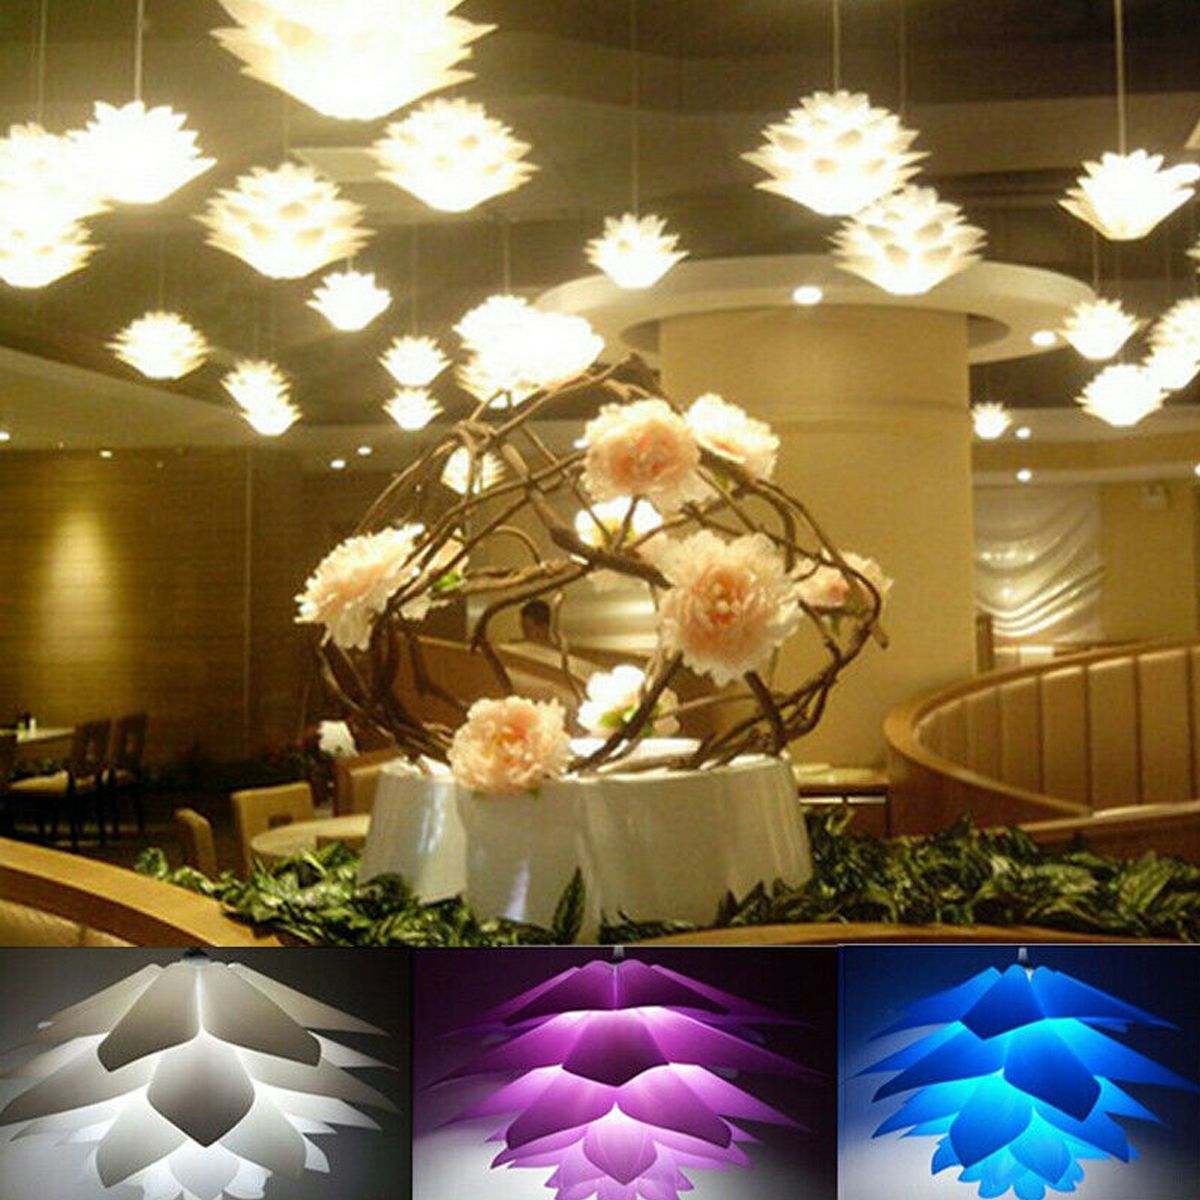 7-Colors-DIY-Lotus-Chandelier-Shape-Ceiling-Pendant-Light-Lampshade-Home-Decor-1720633